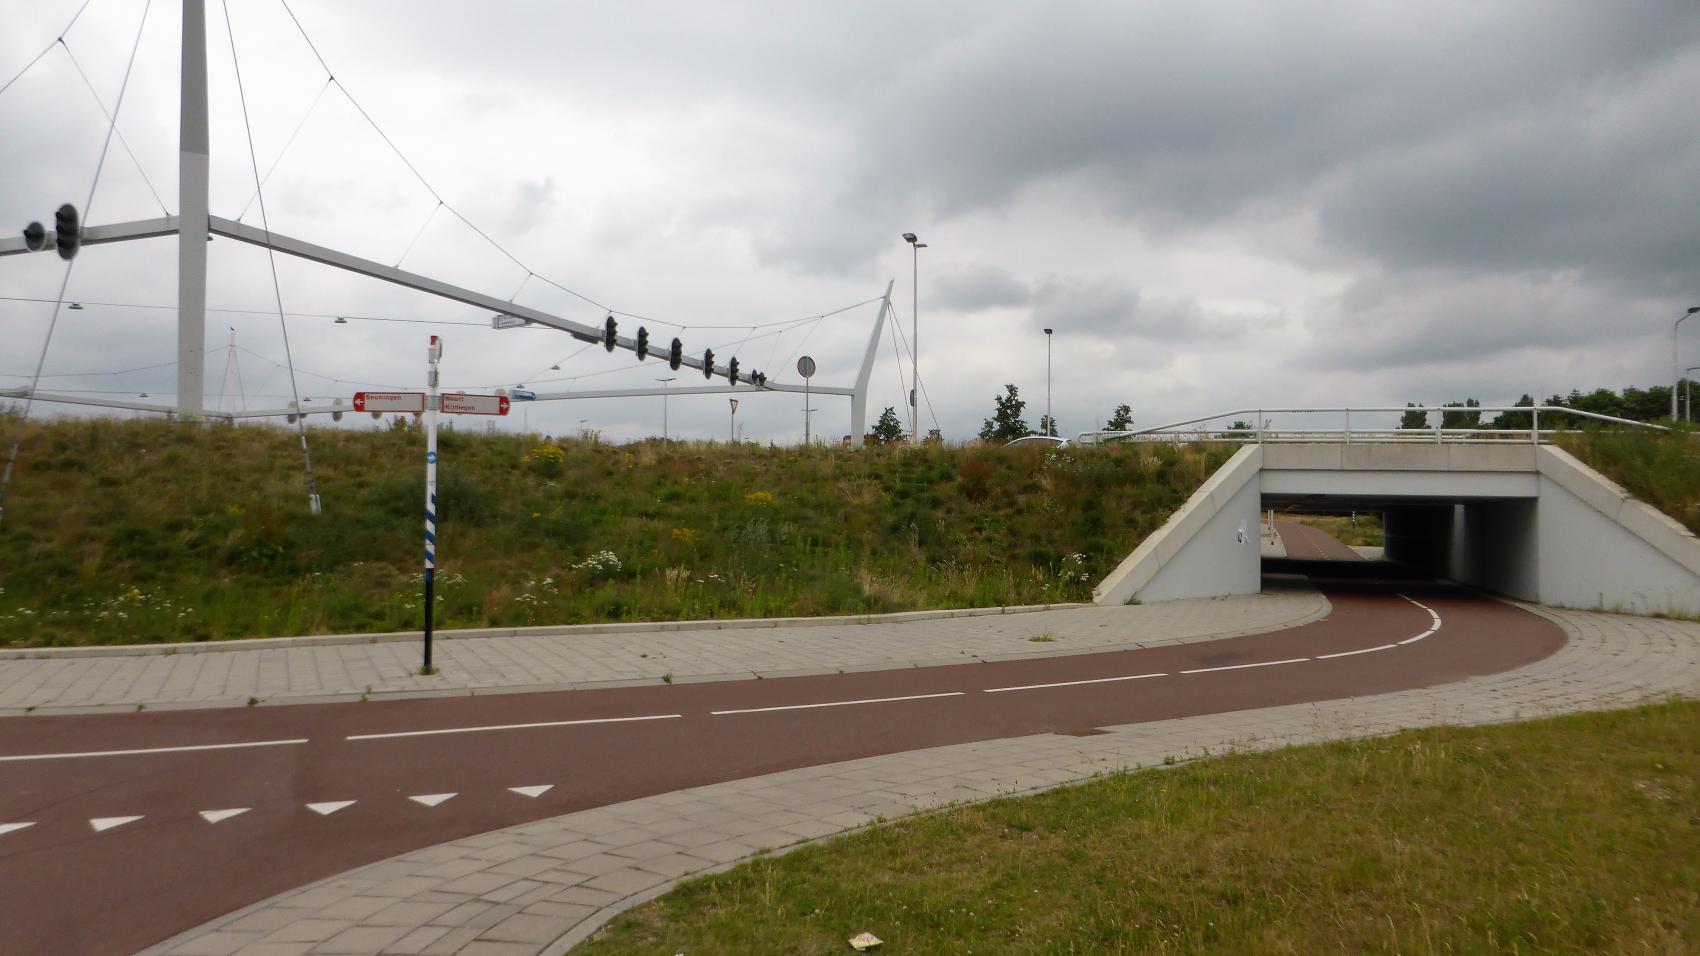 The crossing of Neerbosscheweg (continuation of A73 motorway), Hogelandseweg and IJpenbroekweg between Nijmegen and Beuningen. Traffic lights are for cars, bicycles do not need to stop.